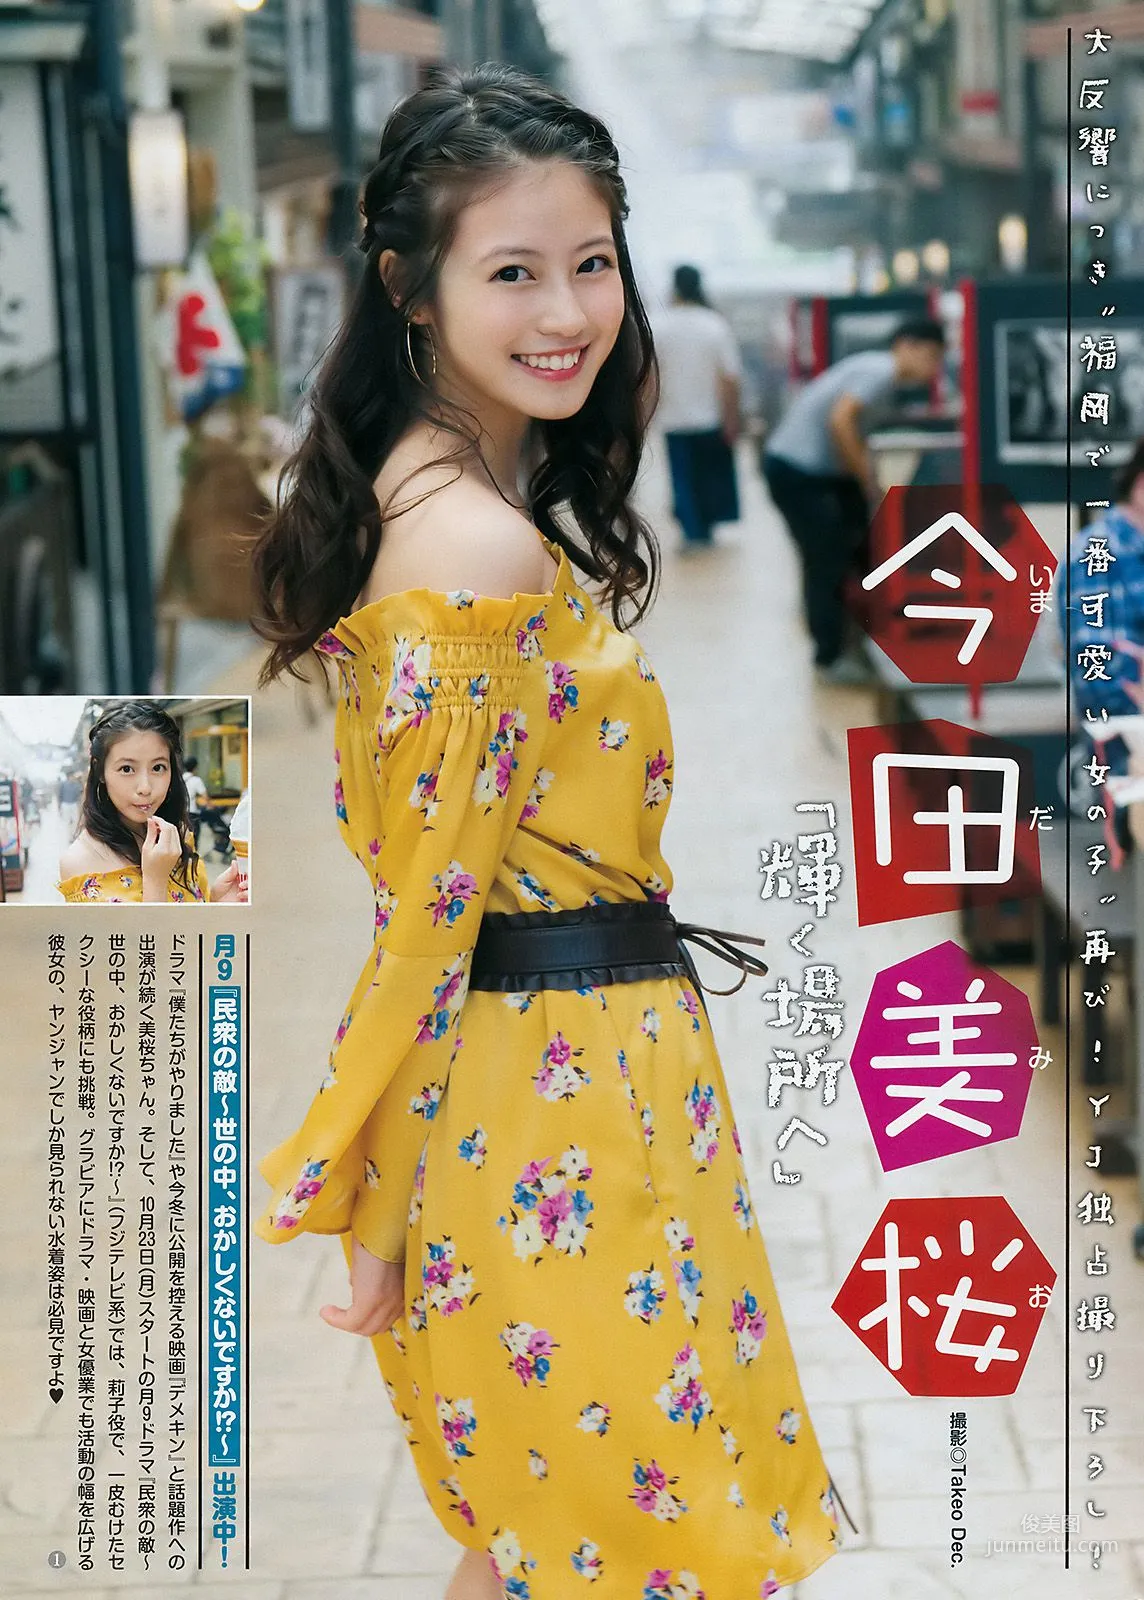 澤北るな 今田美桜 [Weekly Young Jump] 2017年No.48 写真杂志10